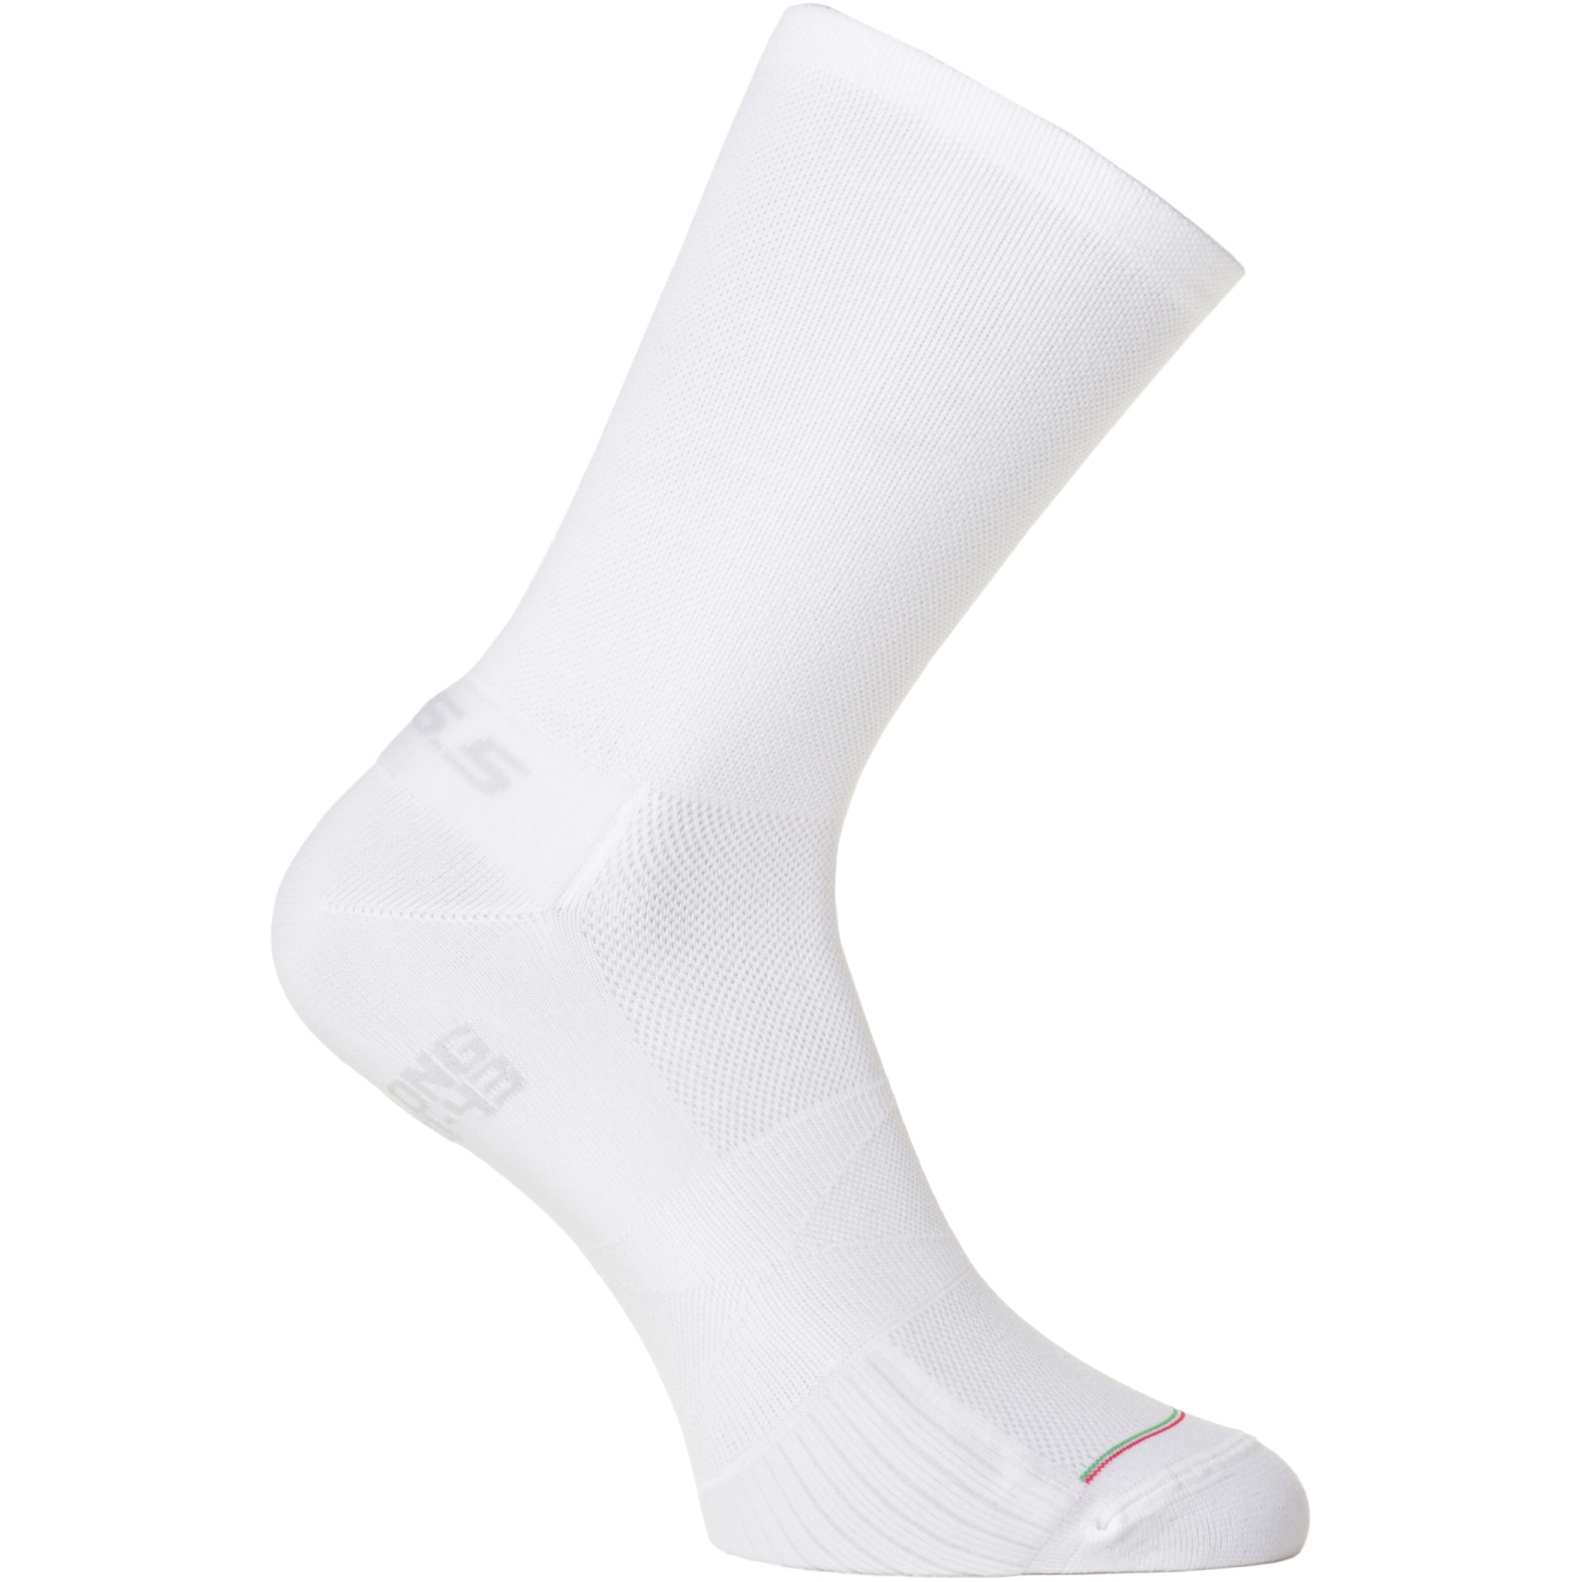 Produktbild von Q36.5 Ultralong Socken 5er Pack - weiß